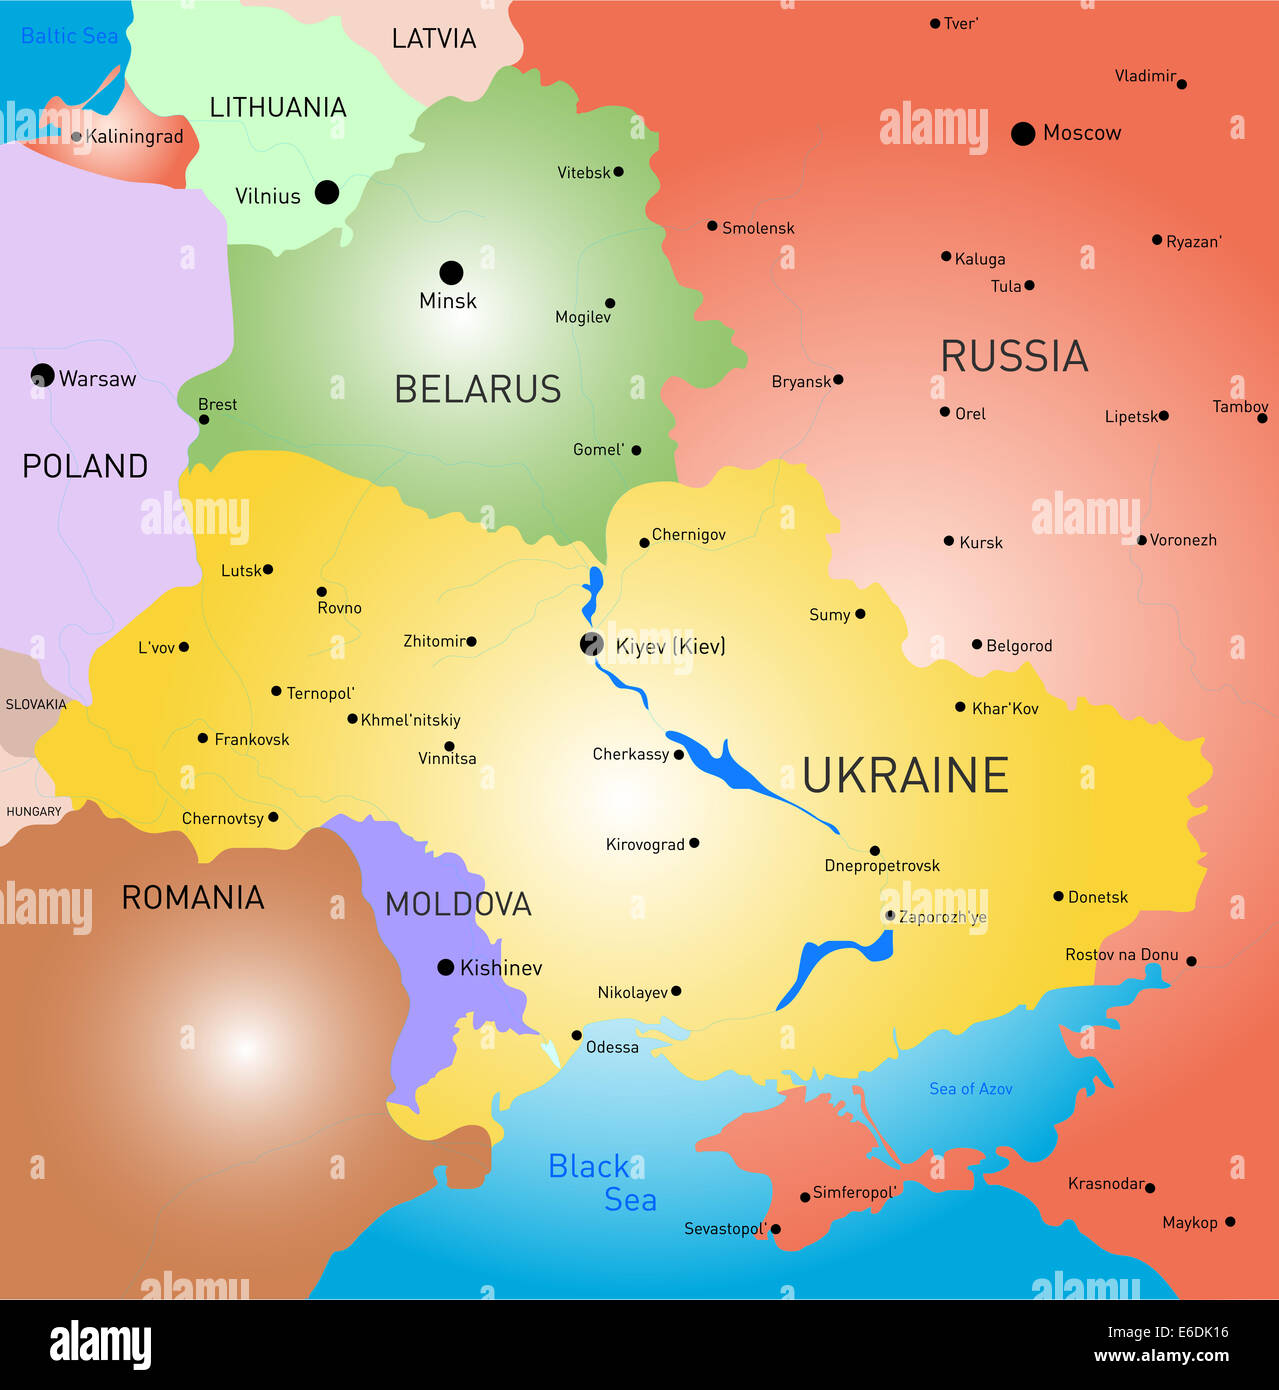 Ucraina mappa politico con capitale Kiev, confini nazionali importanti città, fiumi e laghi. Etichetta inglese e la scala Foto stock - Alamy